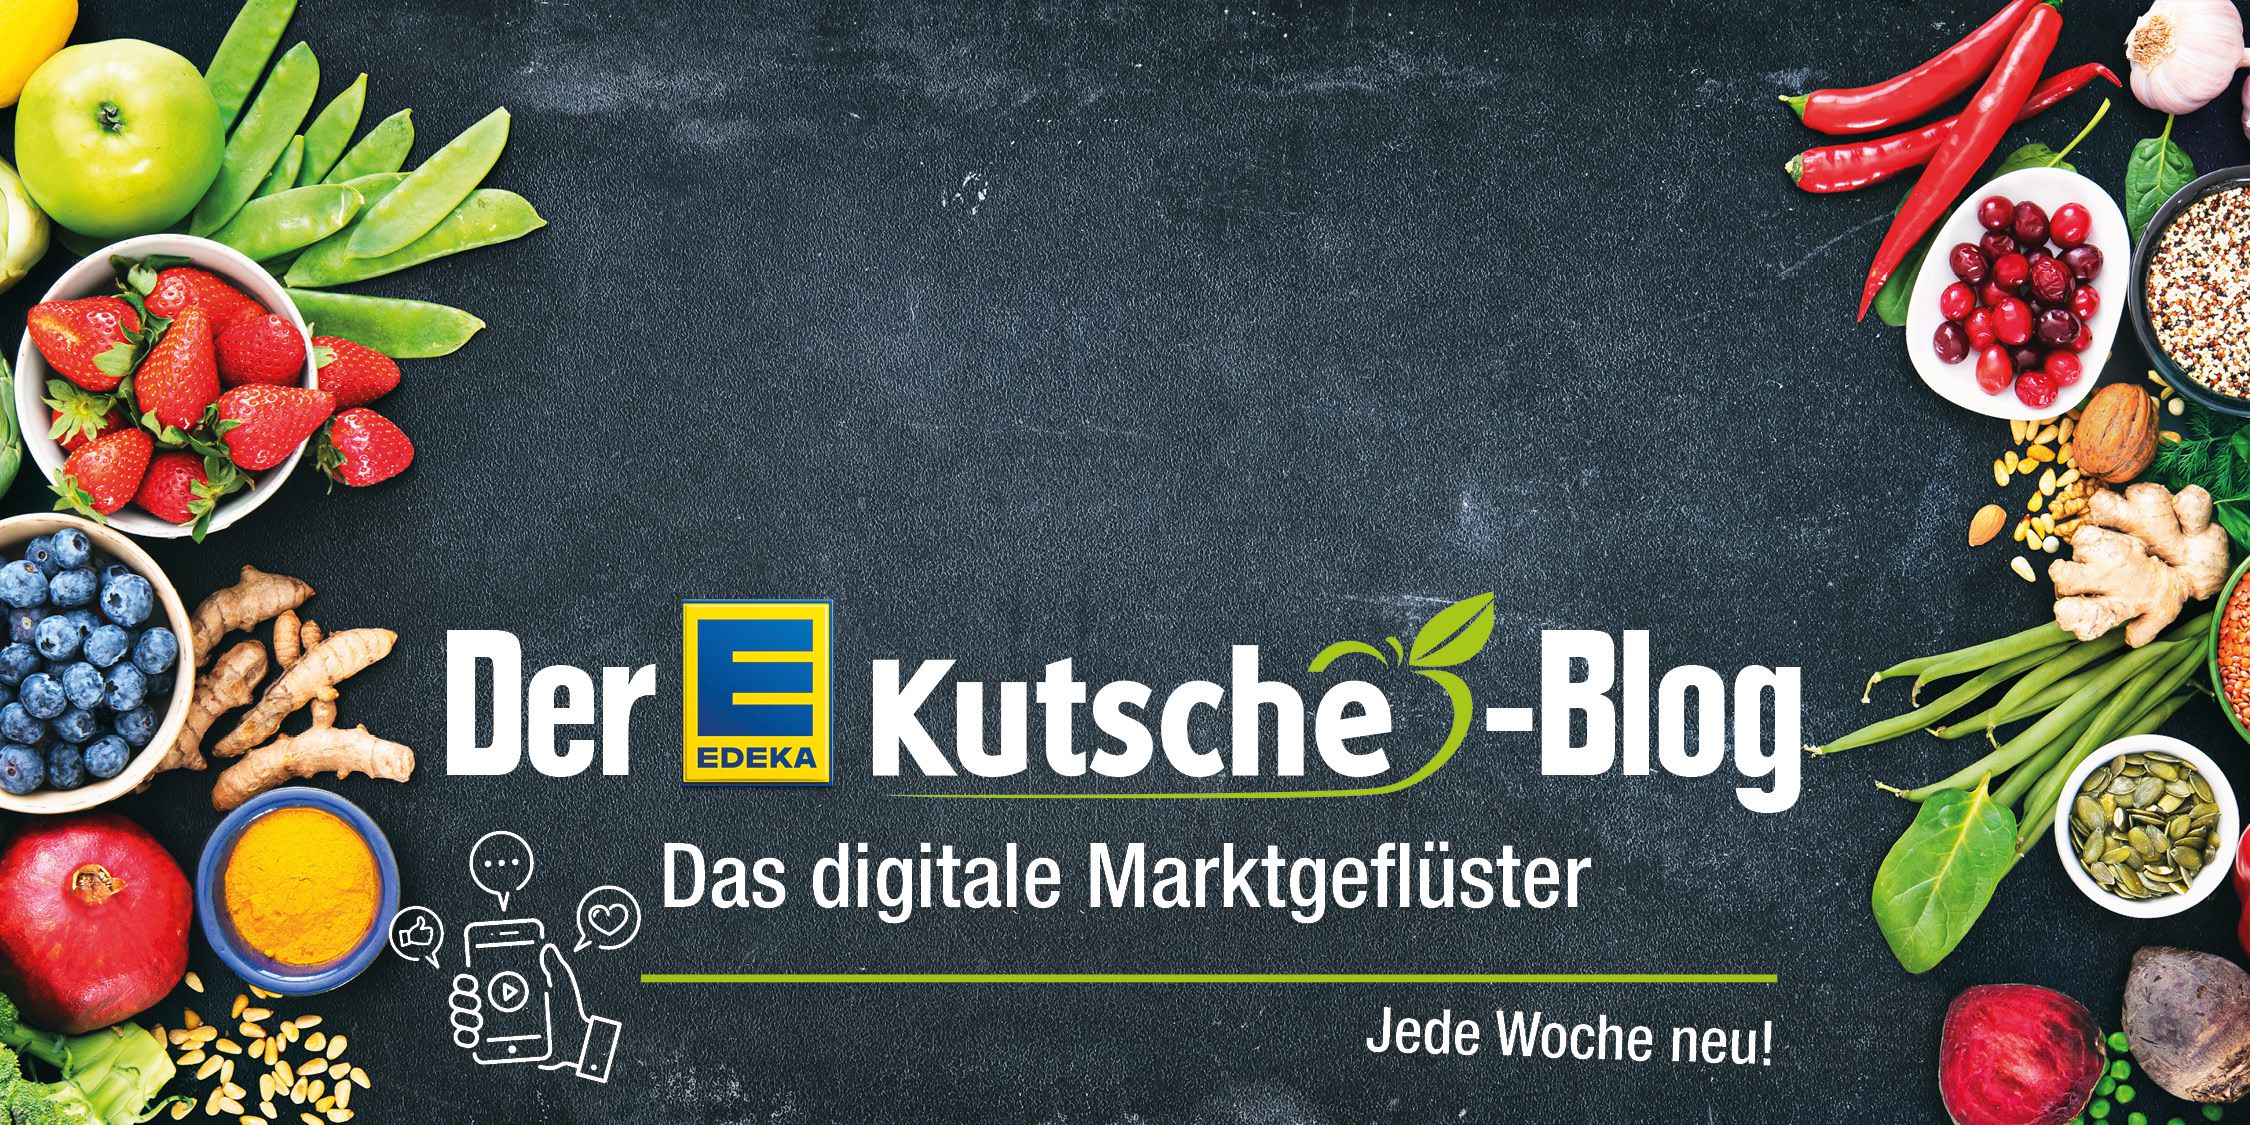 EDEKA Kutsche-Blog - das digitale Marktgeflüster